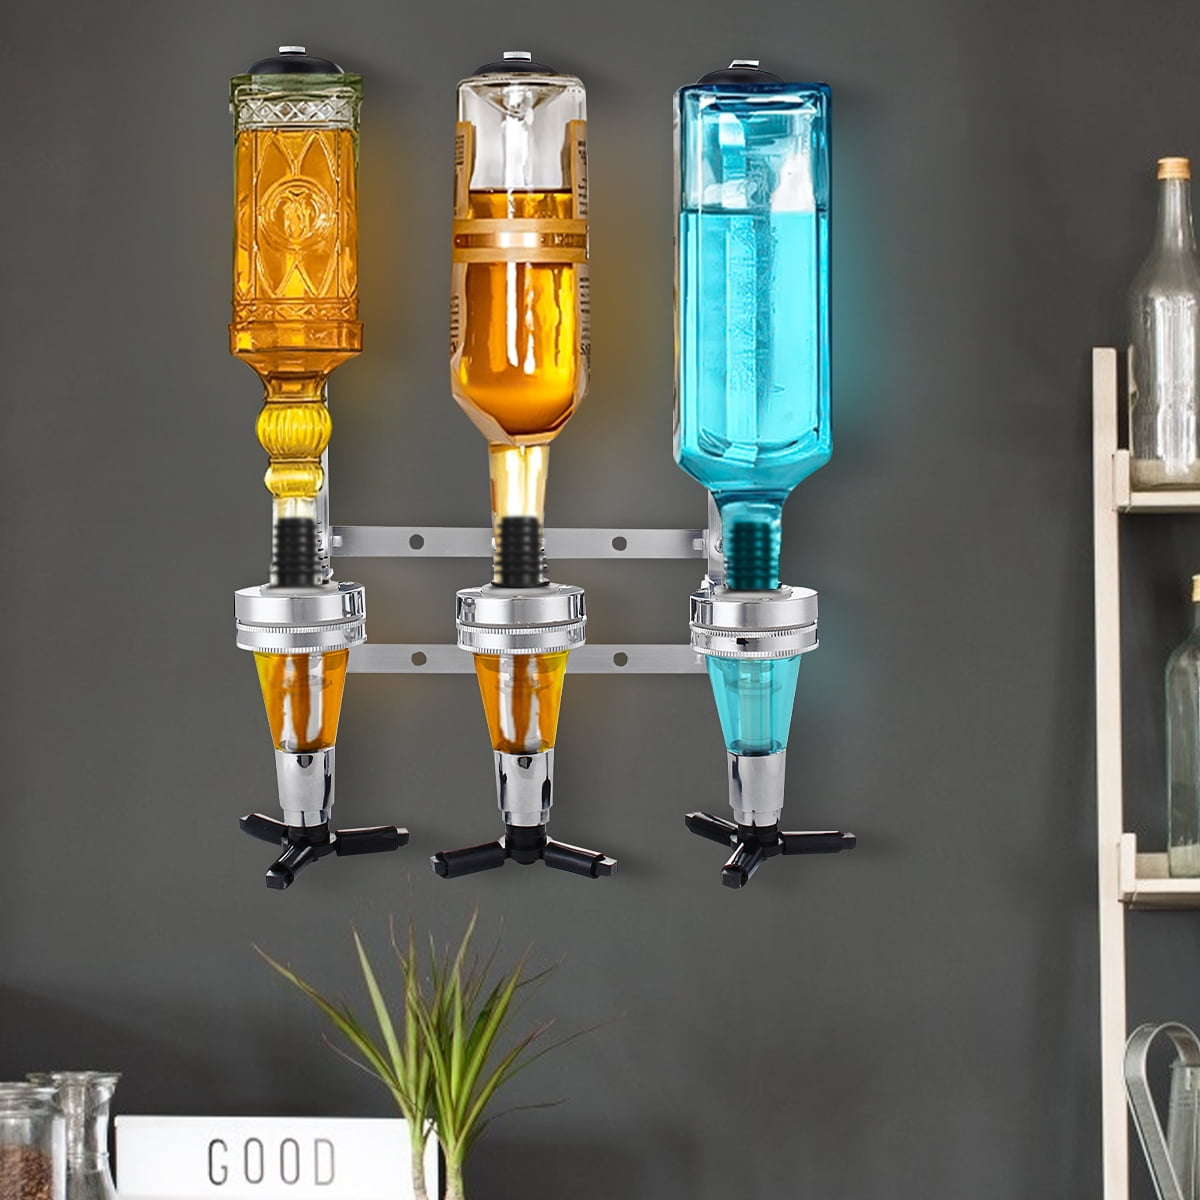 4 Bottle Liquor Dispenser Spirit Drinks Stand Optic Revolving Nozzle Drinkware Set Holder Bar Party Tabletop